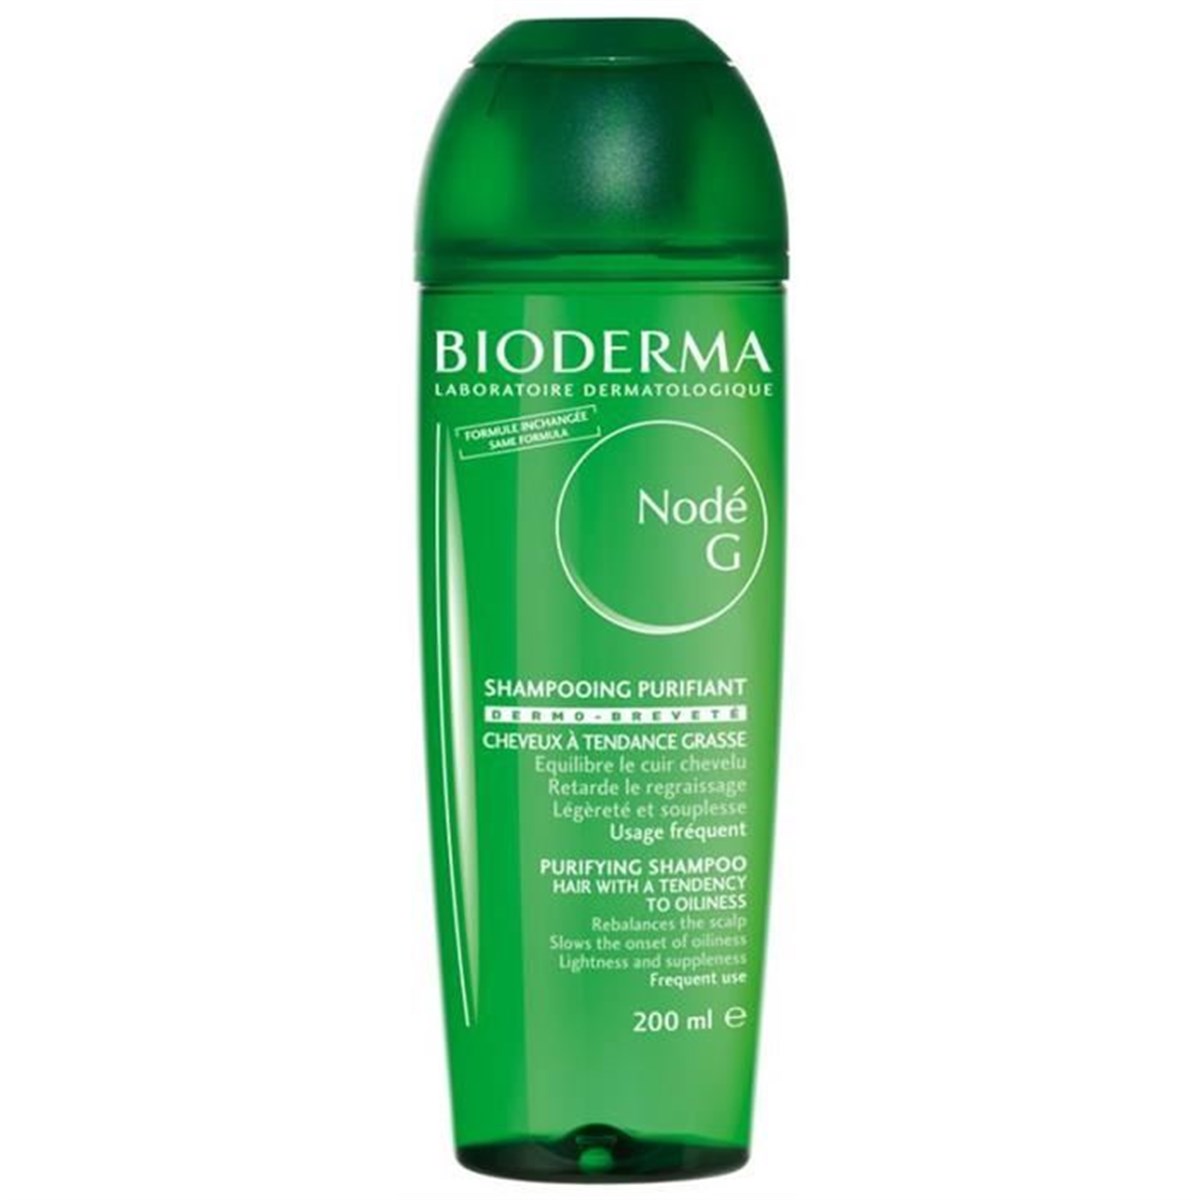 Bioderma Node G Şampuan 200 ml - Yağlı Şaçlar için Kepek Şampuanı